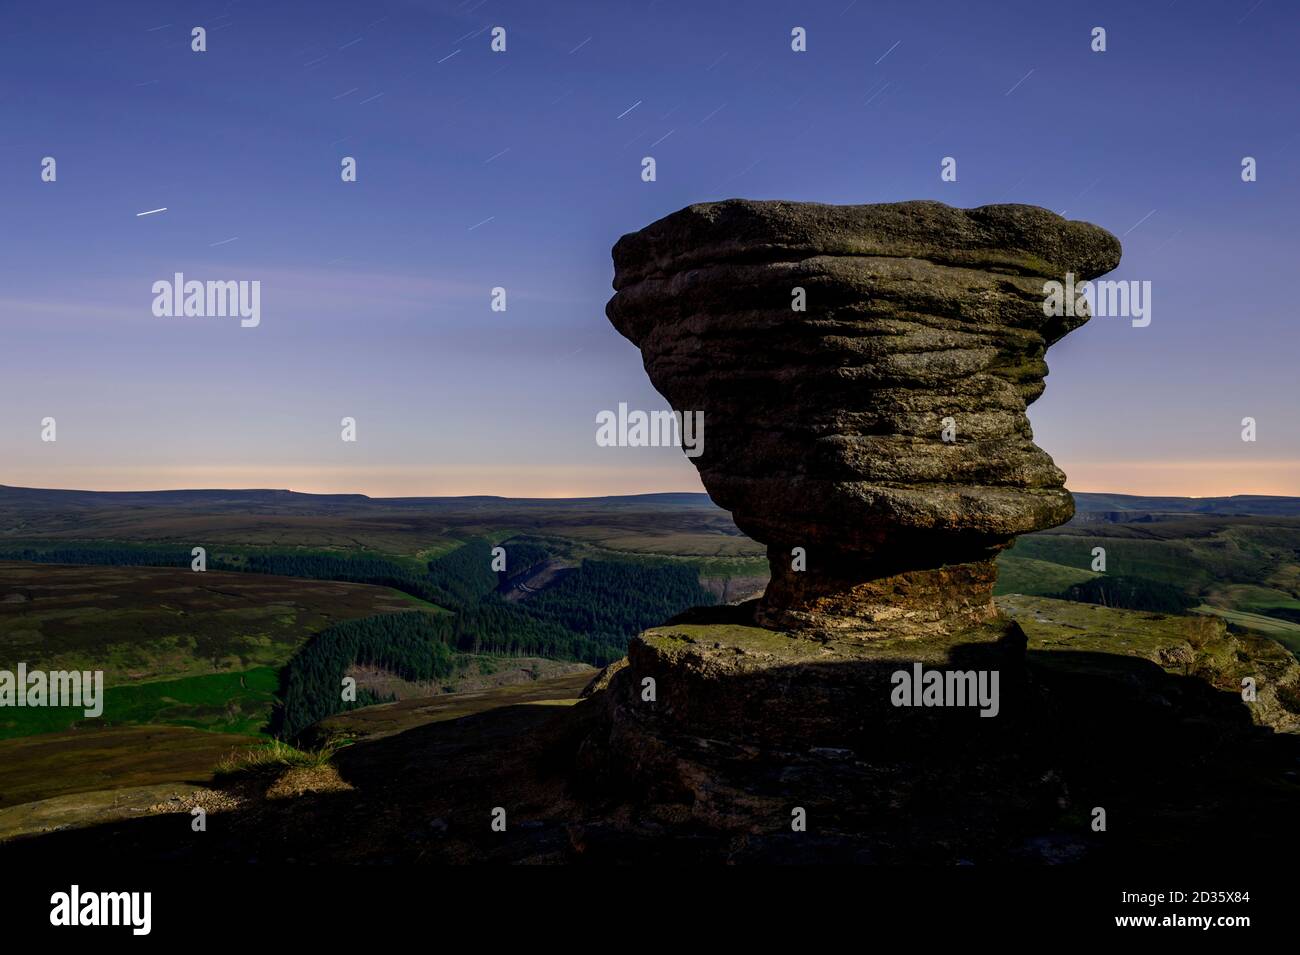 Formazione rocciosa alle intemperie illuminata dalla luna piena, Fairbrook Naze, Kinder Scout, Derbyshire, Peak District, Inghilterra, Regno Unito Foto Stock